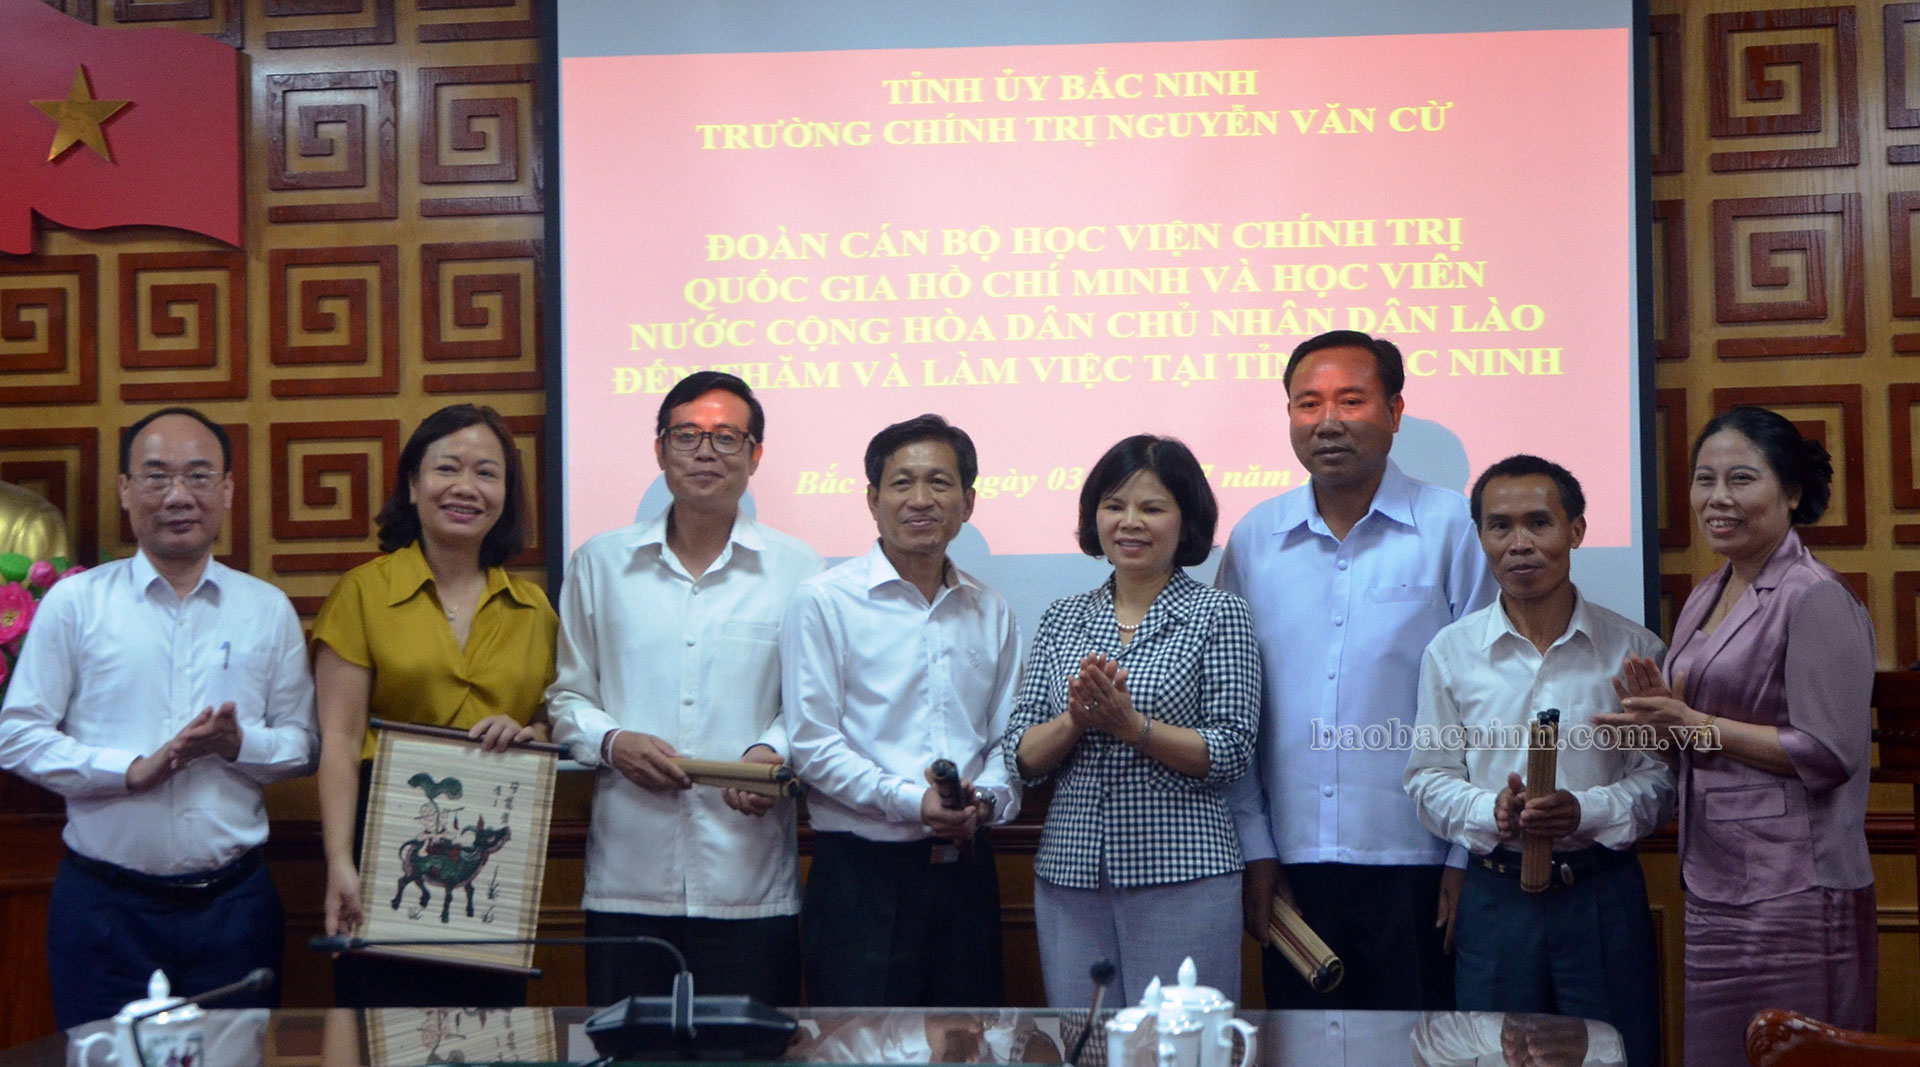 Đoàn cán bộ Học viện Chính trị Quốc gia Hồ Chí Minh và học viên nước Cộng hòa dân chủ nhân dân Lào thăm, nghiên cứu thực tế tại Bắc Ninh